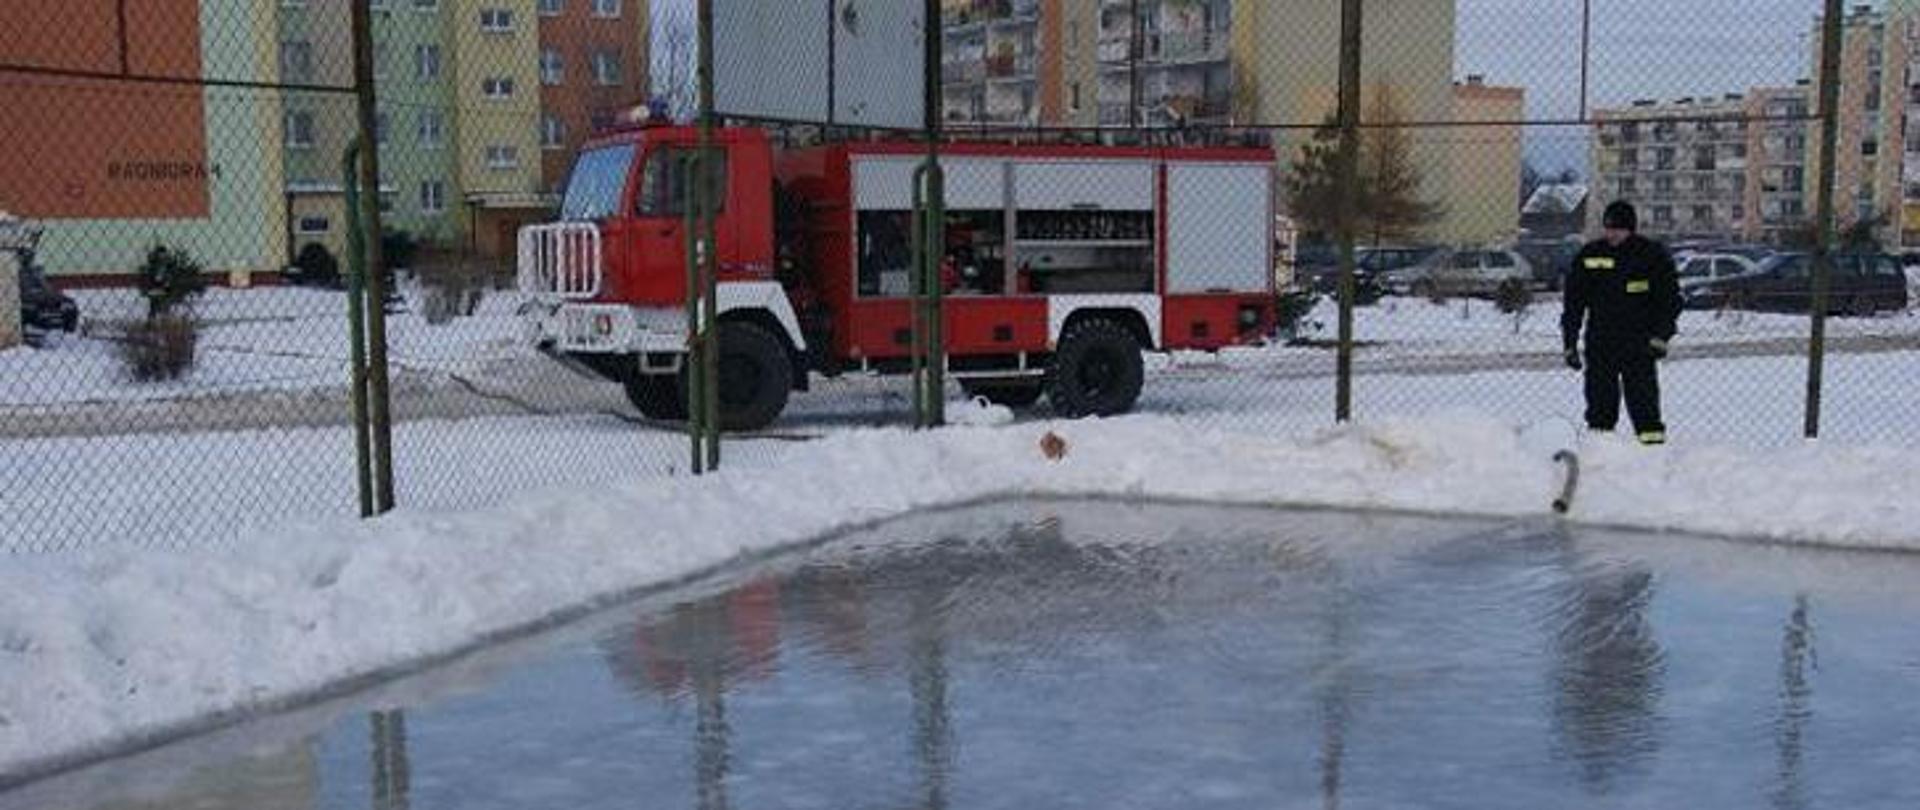 Zdjęcie przedstawia wóz strażacki oraz strażaka, który przygotowuje lodowisko na boisku szkolnym.